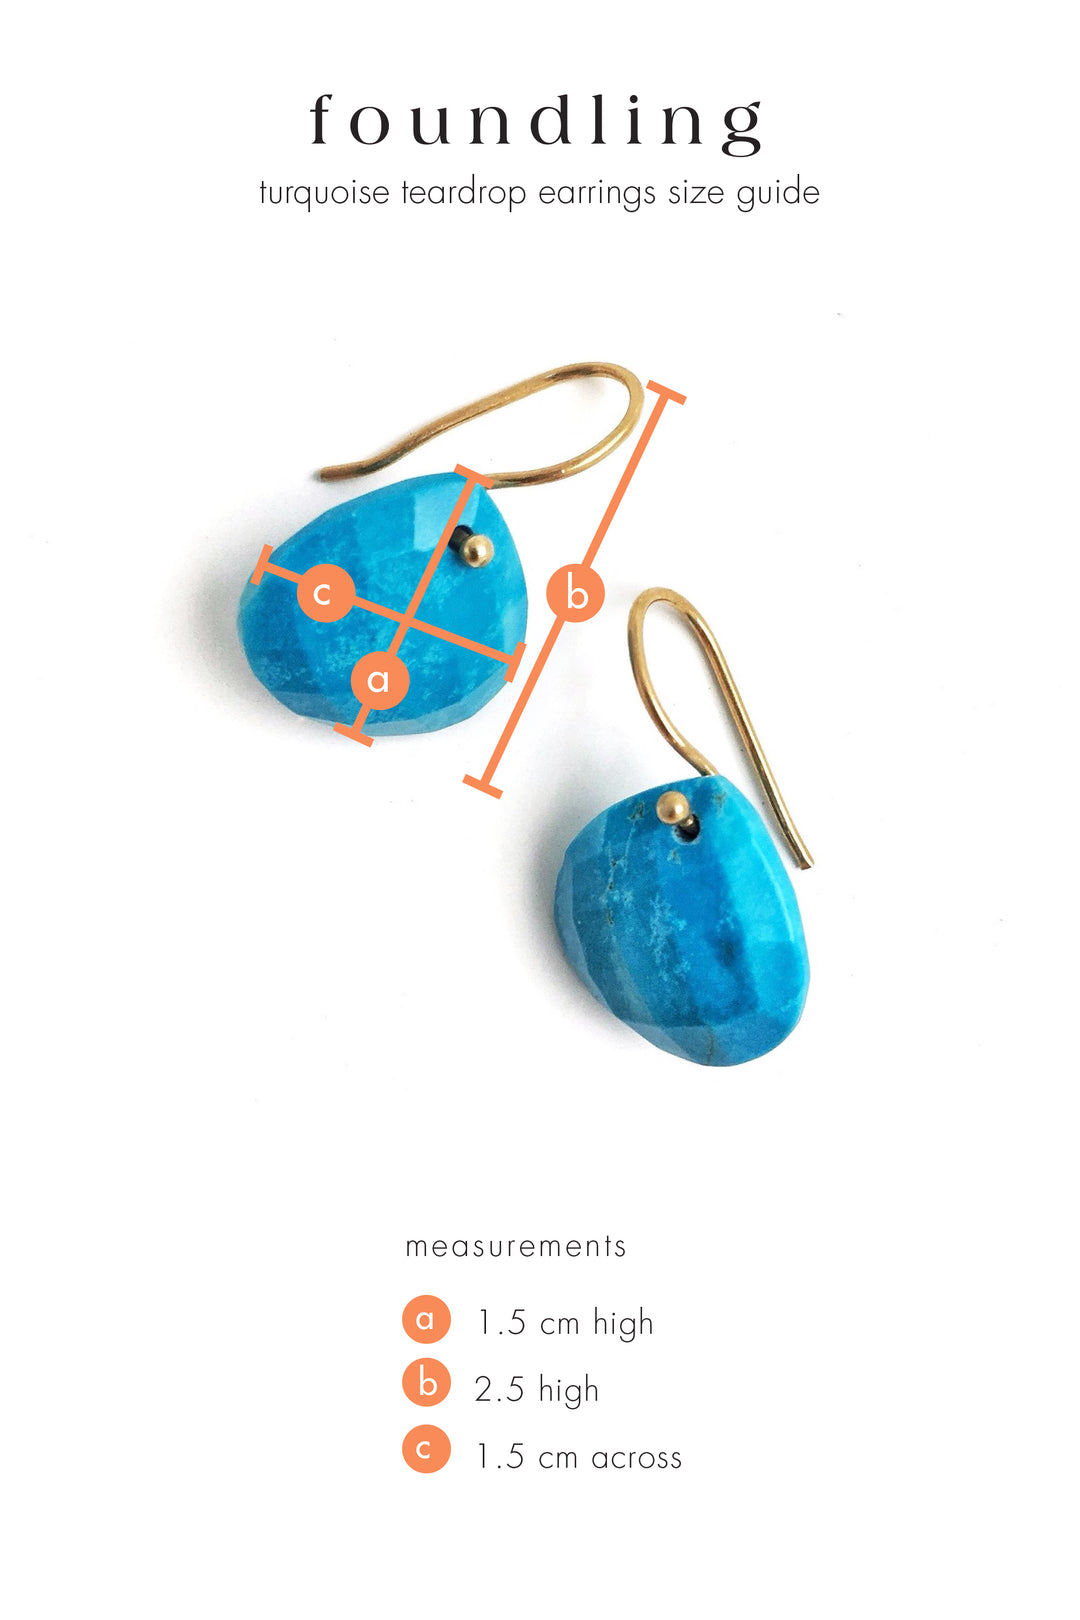 Turquoise teardrop earrings gold hook